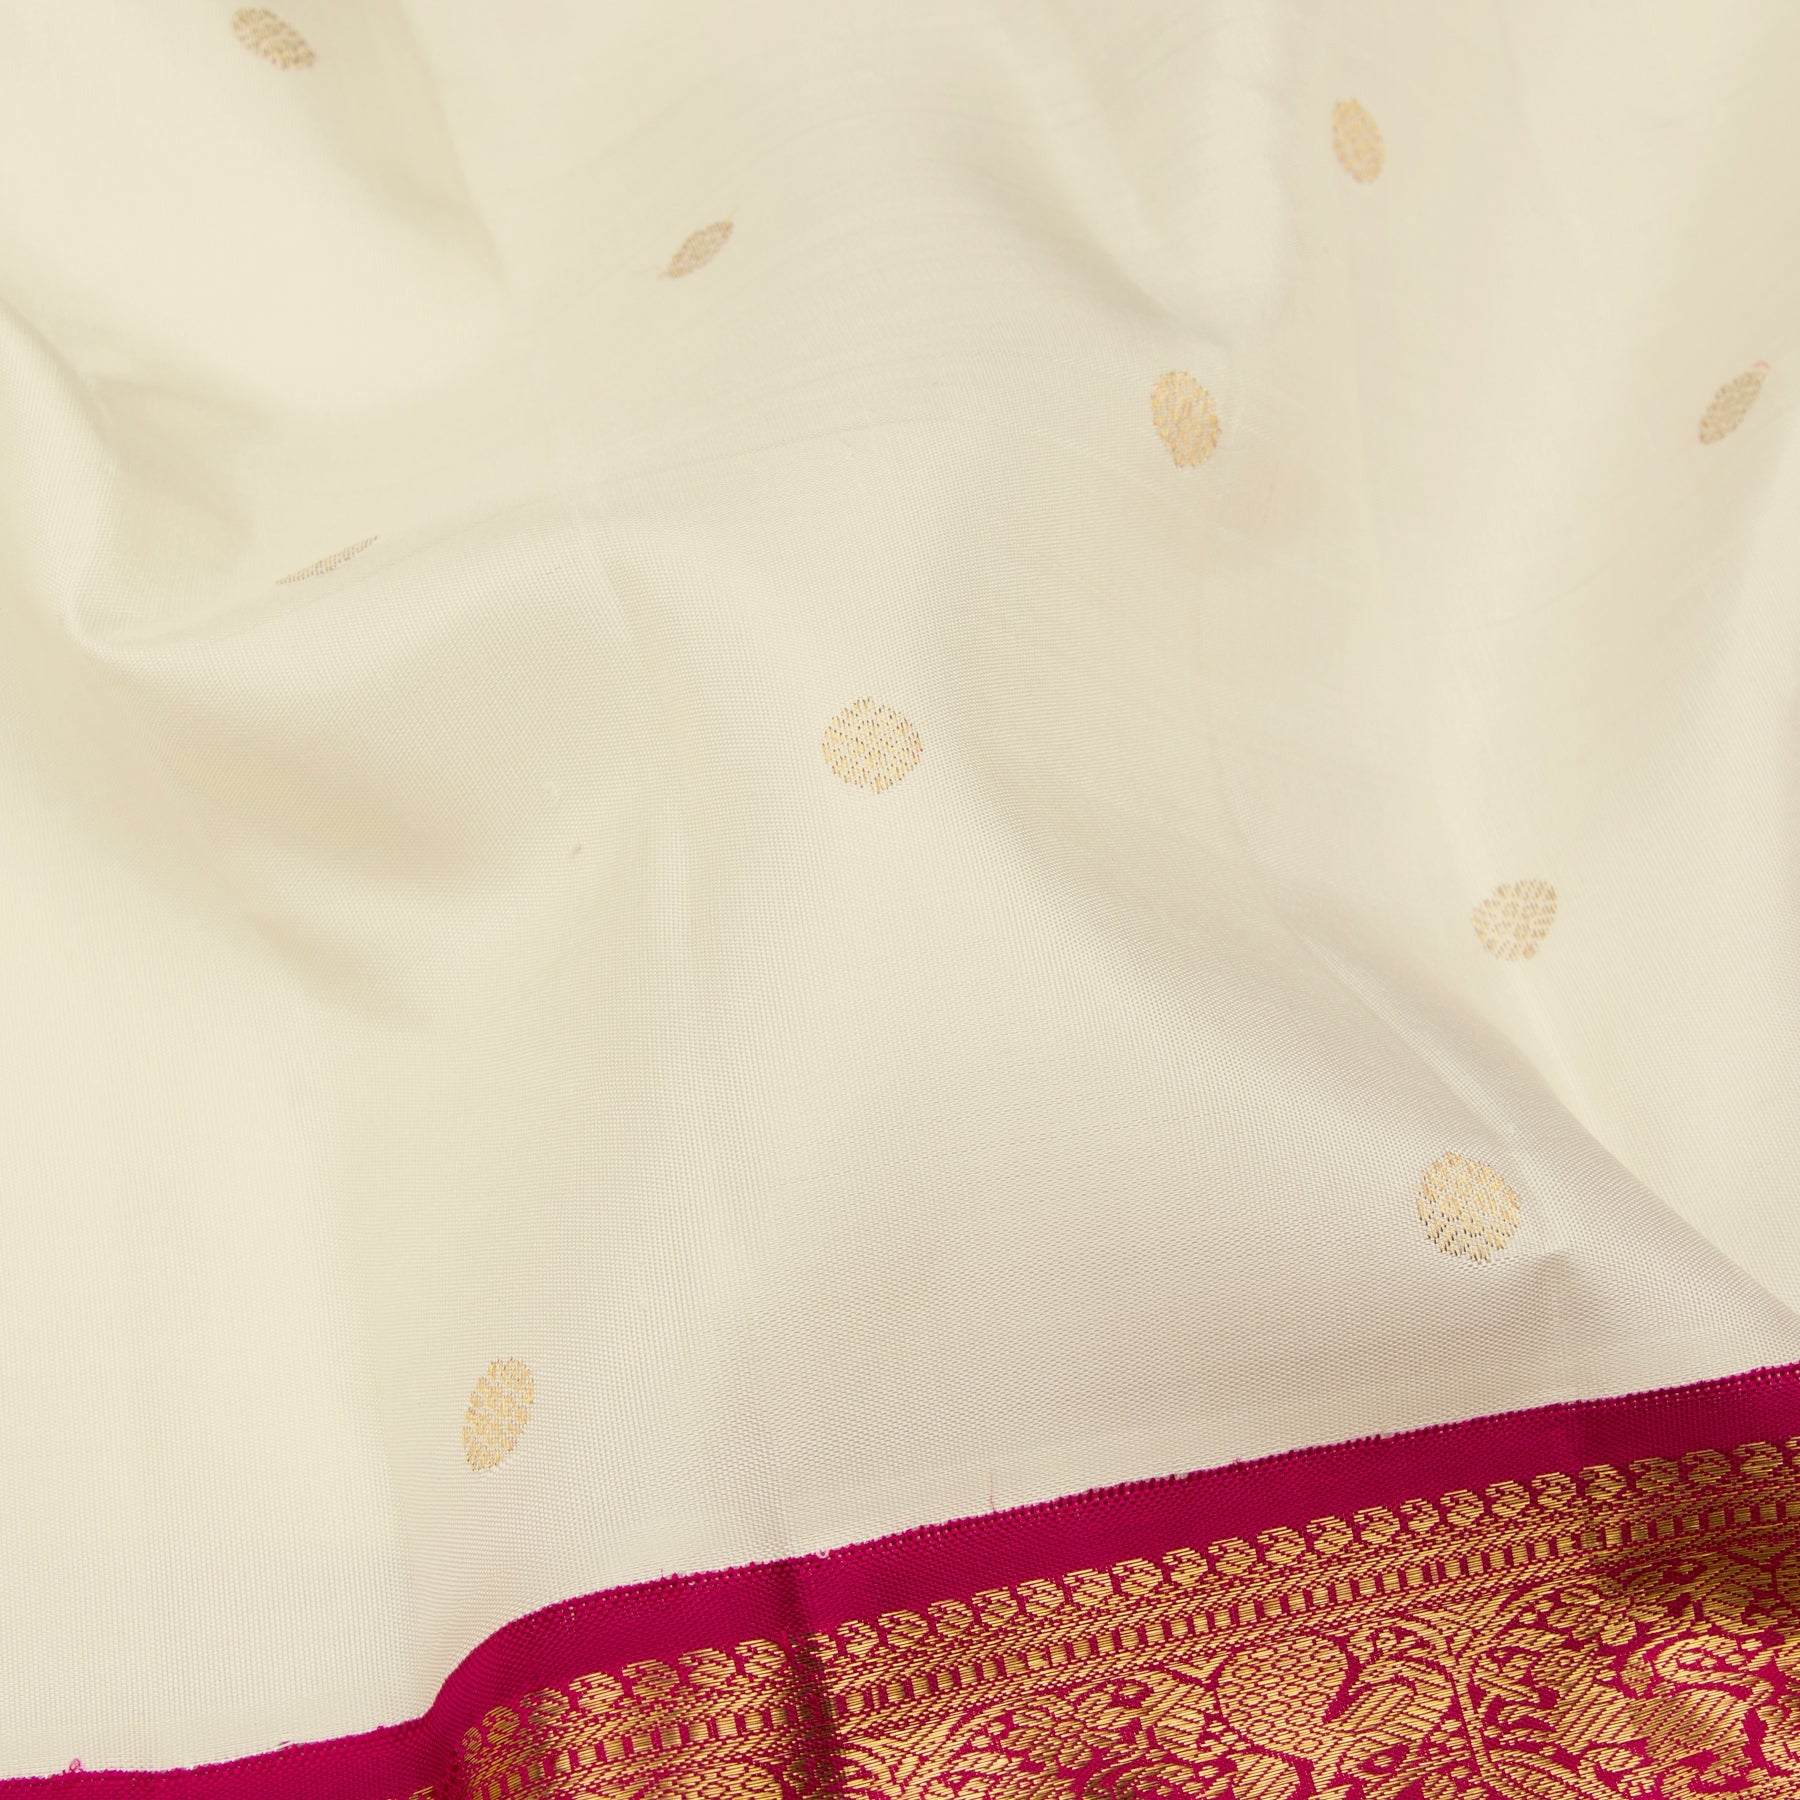 Kanakavalli Kanjivaram Silk Sari 23-110-HS001-07026 - Fabric View